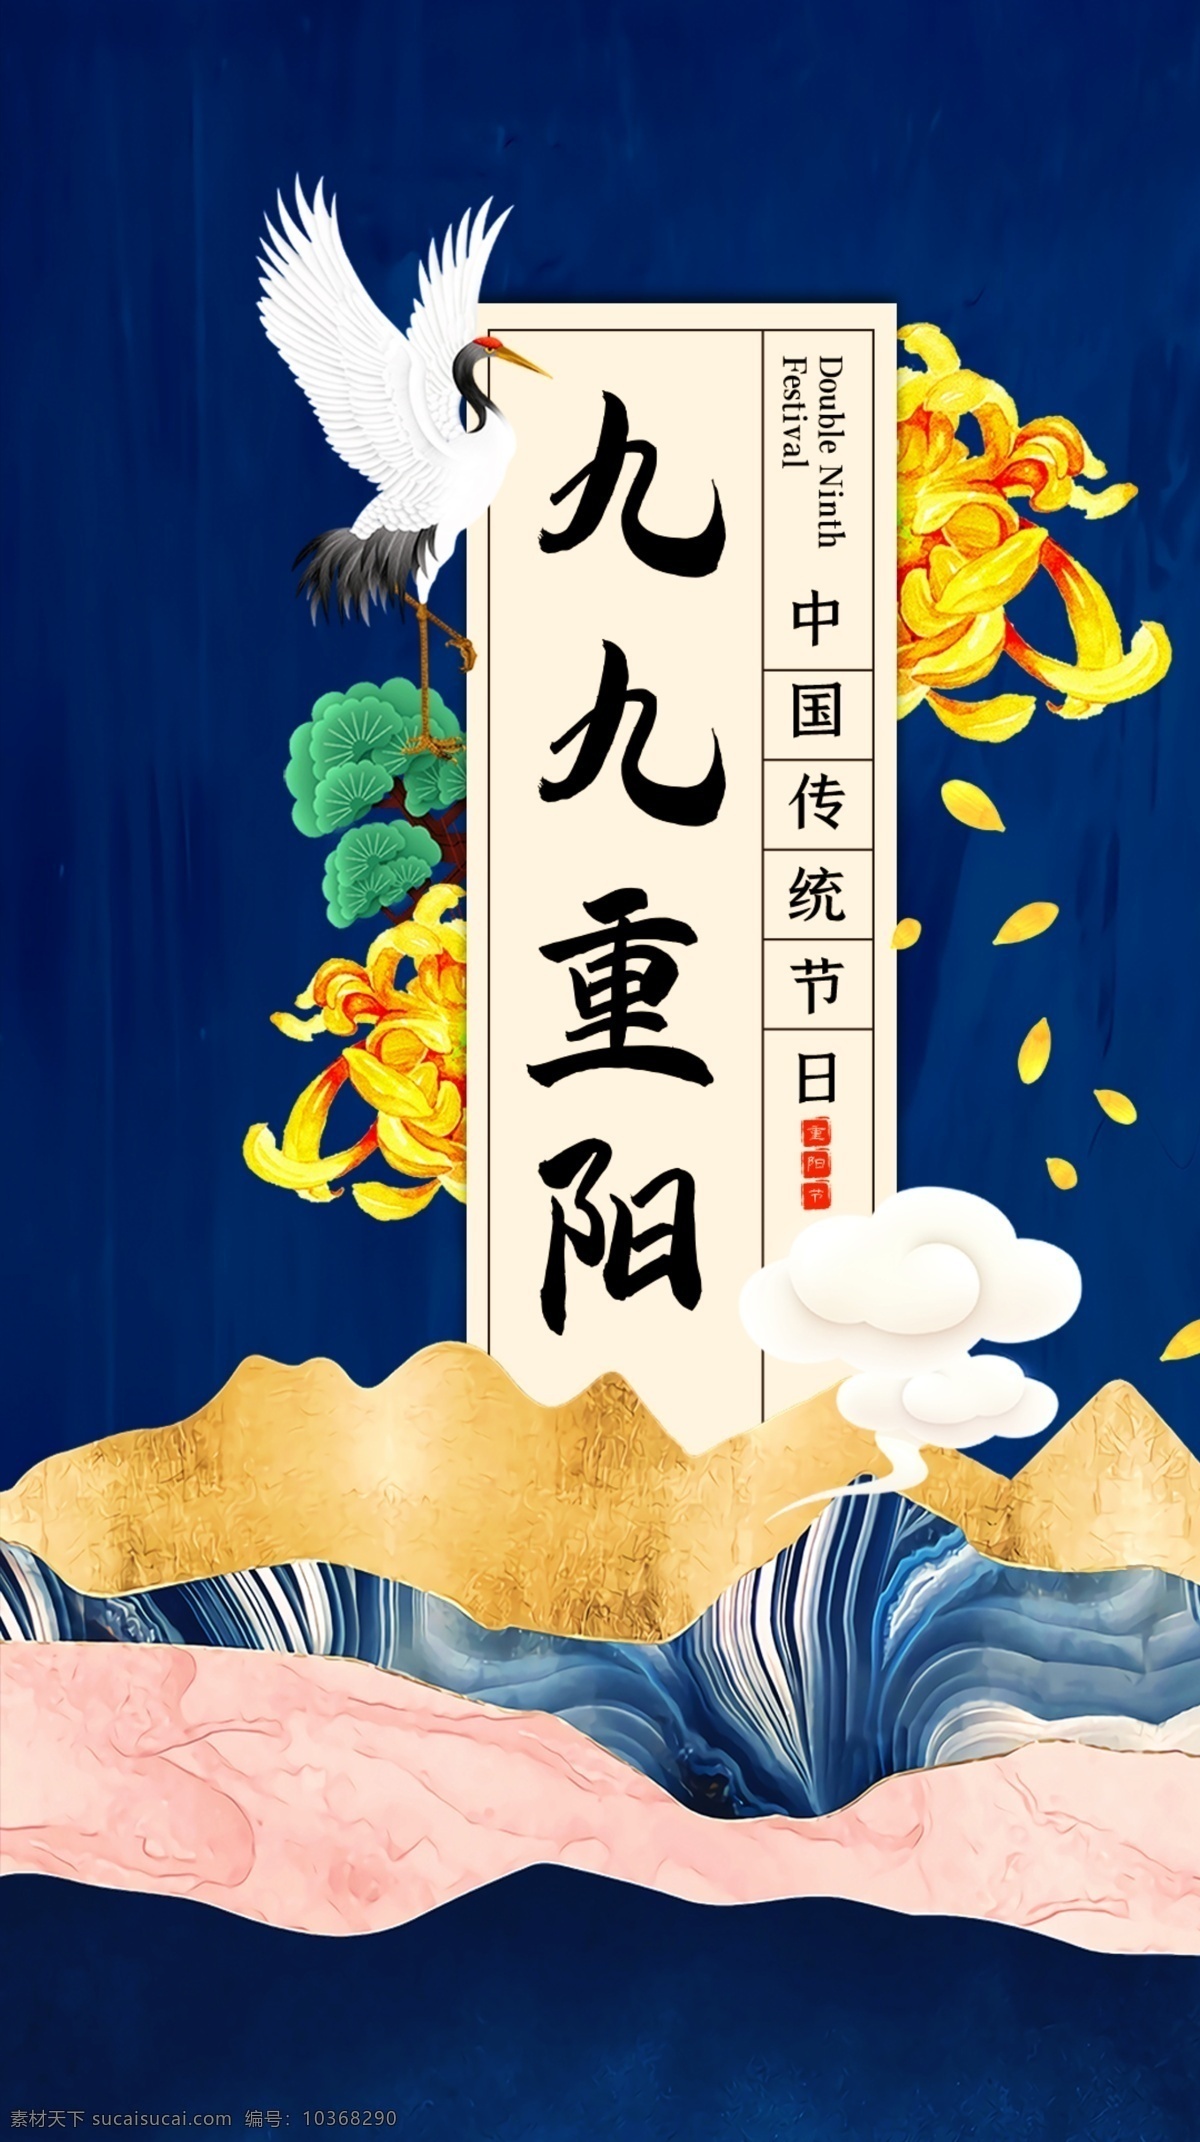 中国 风 九 重阳 传统节日 宣传海报 中国风 九九重阳 传统 节日 宣传 海报 vi设计